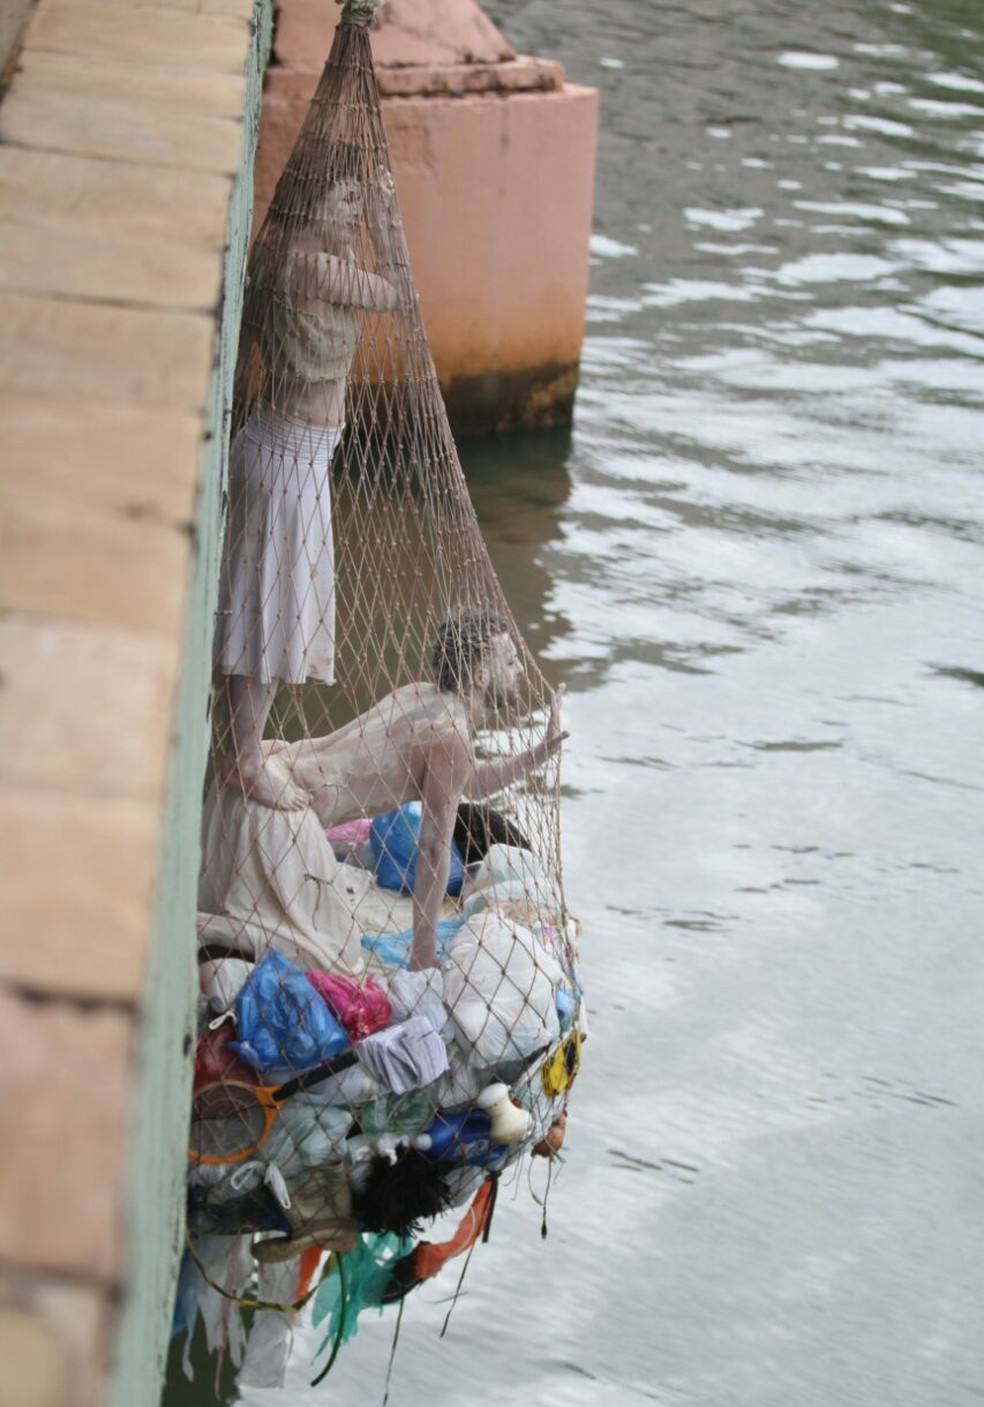 Artistas ficaram pendurados em redes de lixo sobre o Rio Capibaribe, no Recife (Foto: Marlon Costa/Pernambuco Press)